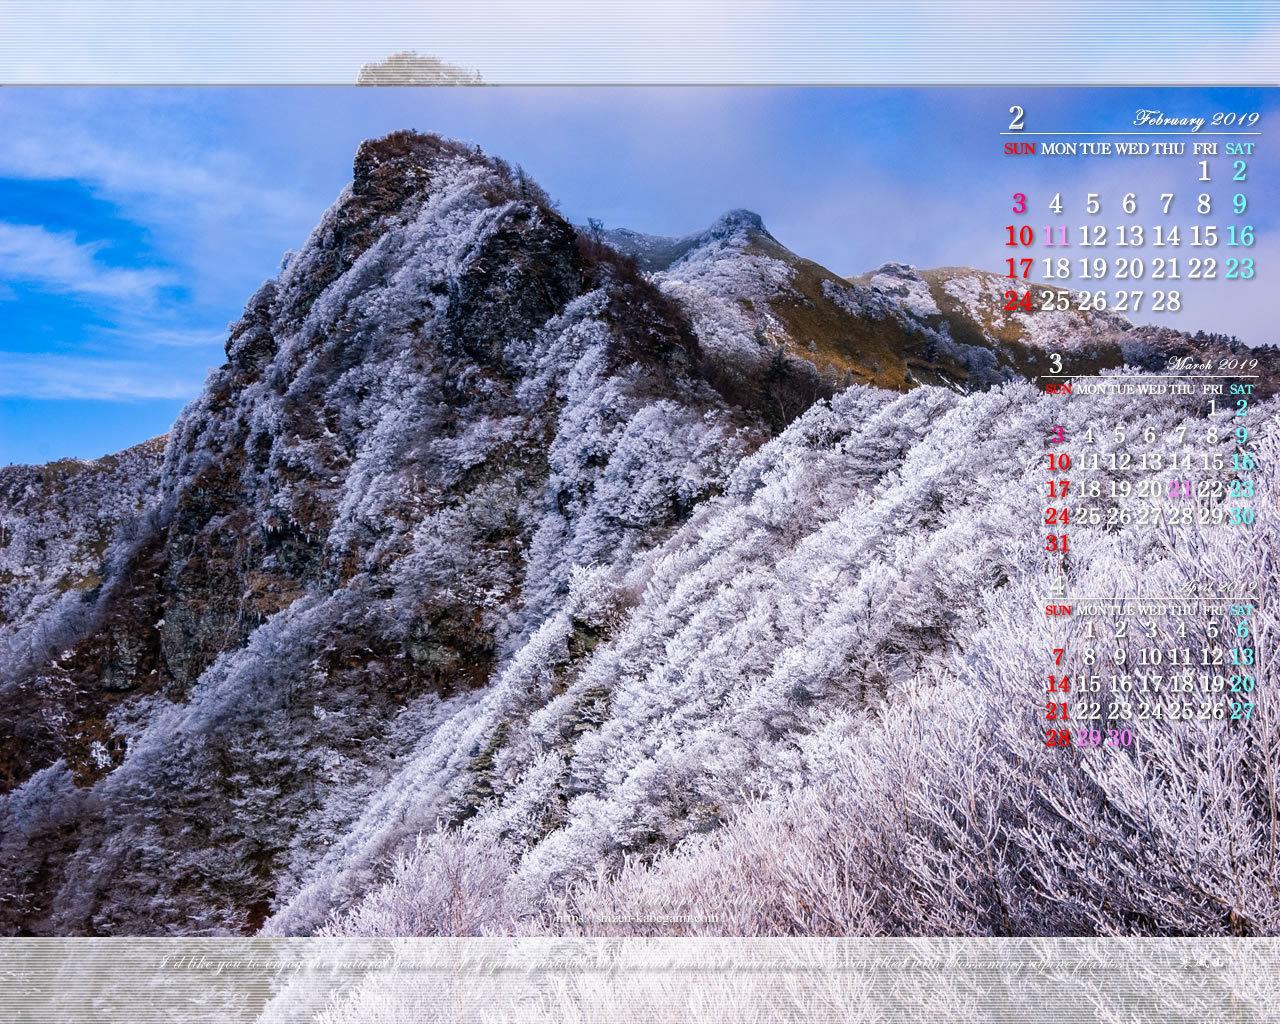 2019年2月カレンダー壁紙 山岳写真 寒風山 1 ネイチャーフォト壁紙館